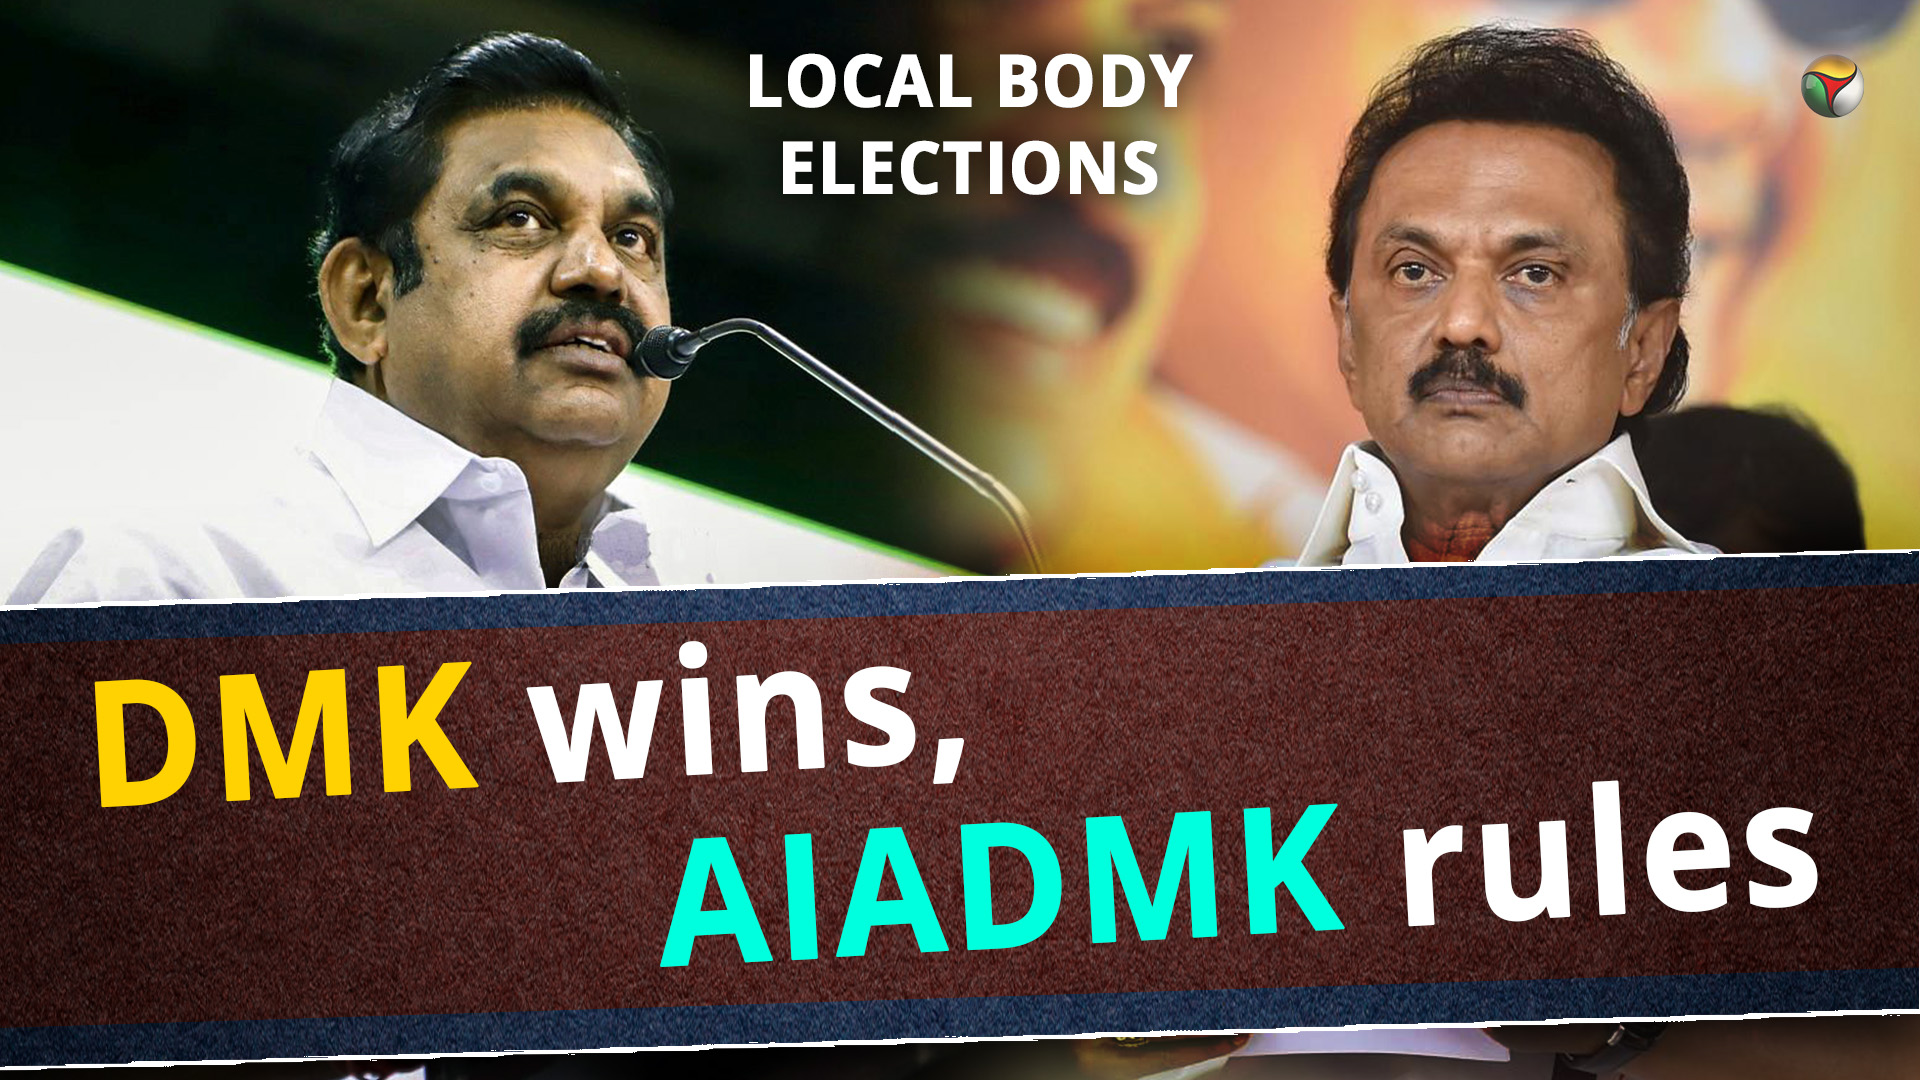 TN local body polls: DMK wins, AIADMK rules